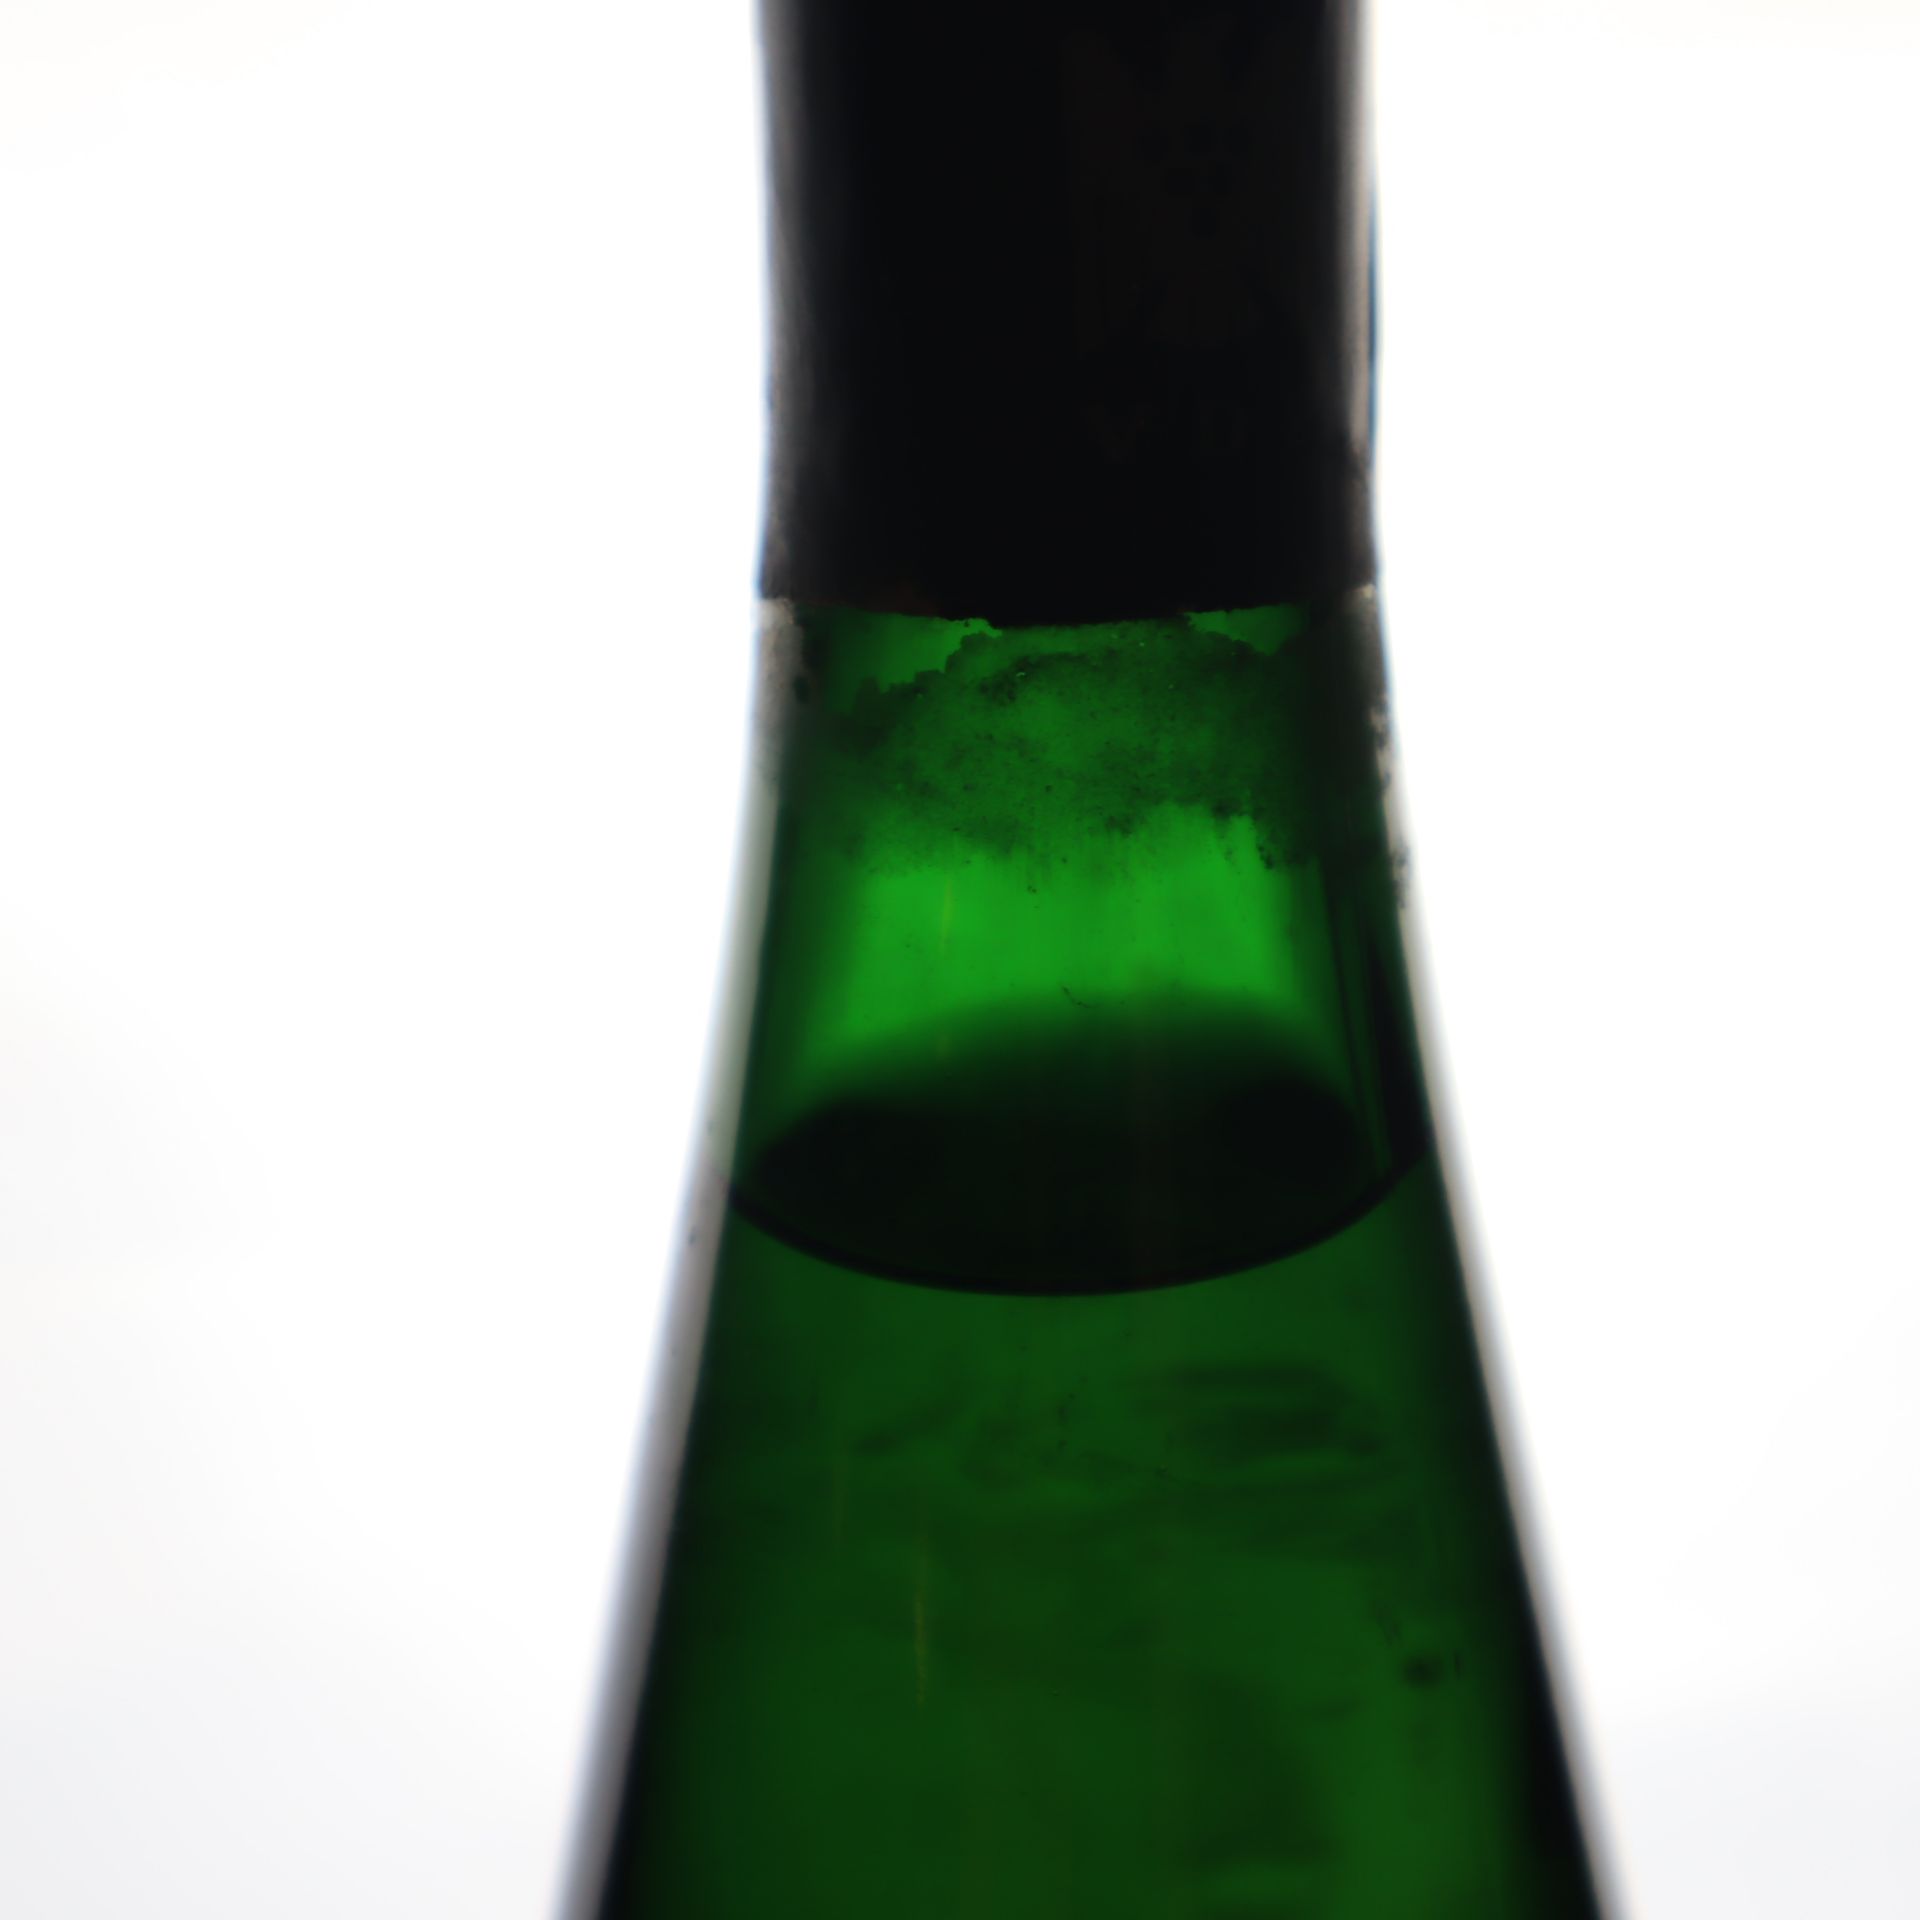 Weinkonvolut - 2 Flaschen 1999er Laumersheimer Mandelberg, Riesling Auslese, We - Bild 3 aus 5